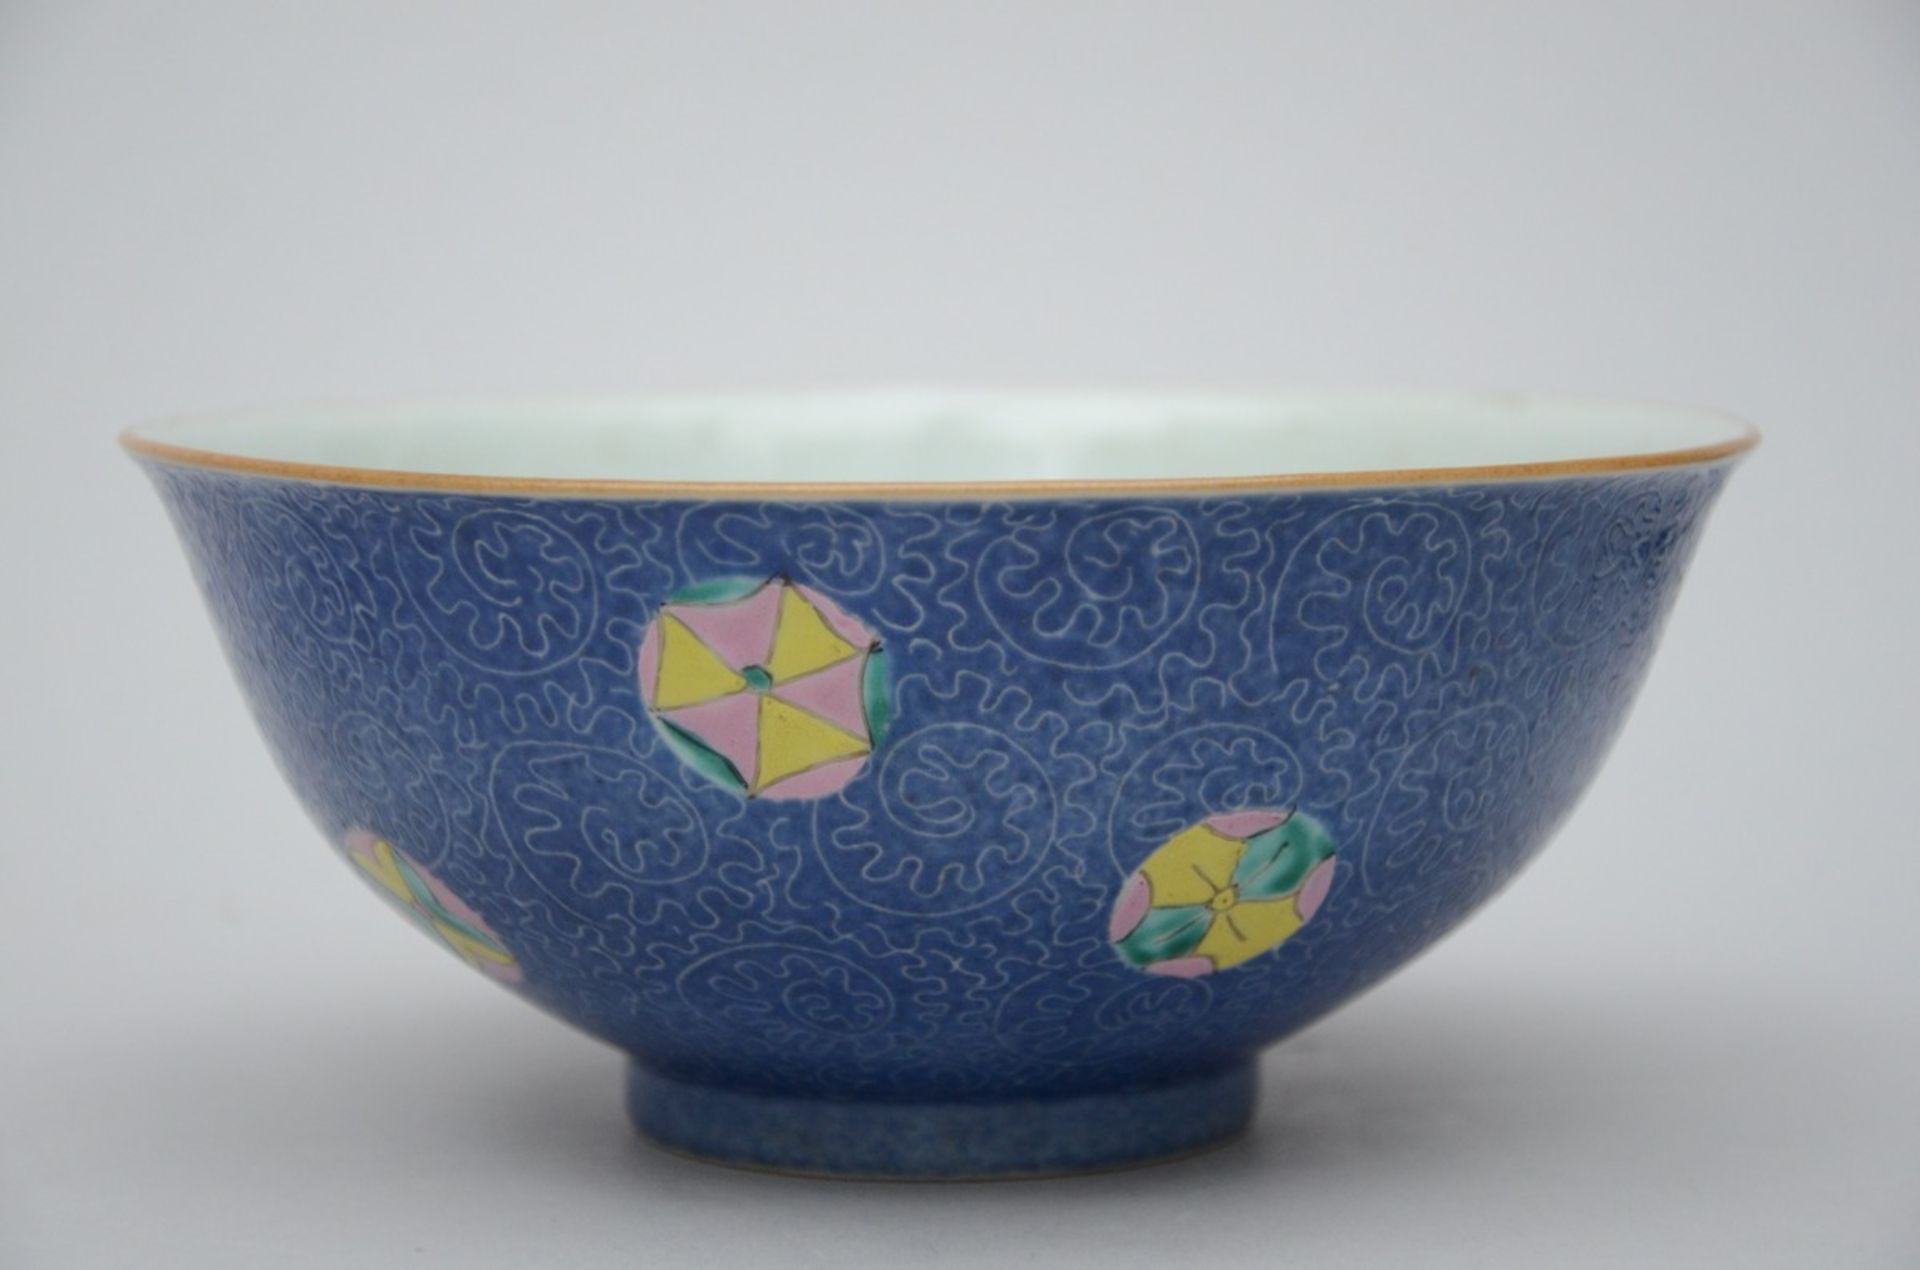 A collection of Republic porcelain with graviata decoration: 4 bowls (dia 17.5 - 20 cm) - Bild 4 aus 4